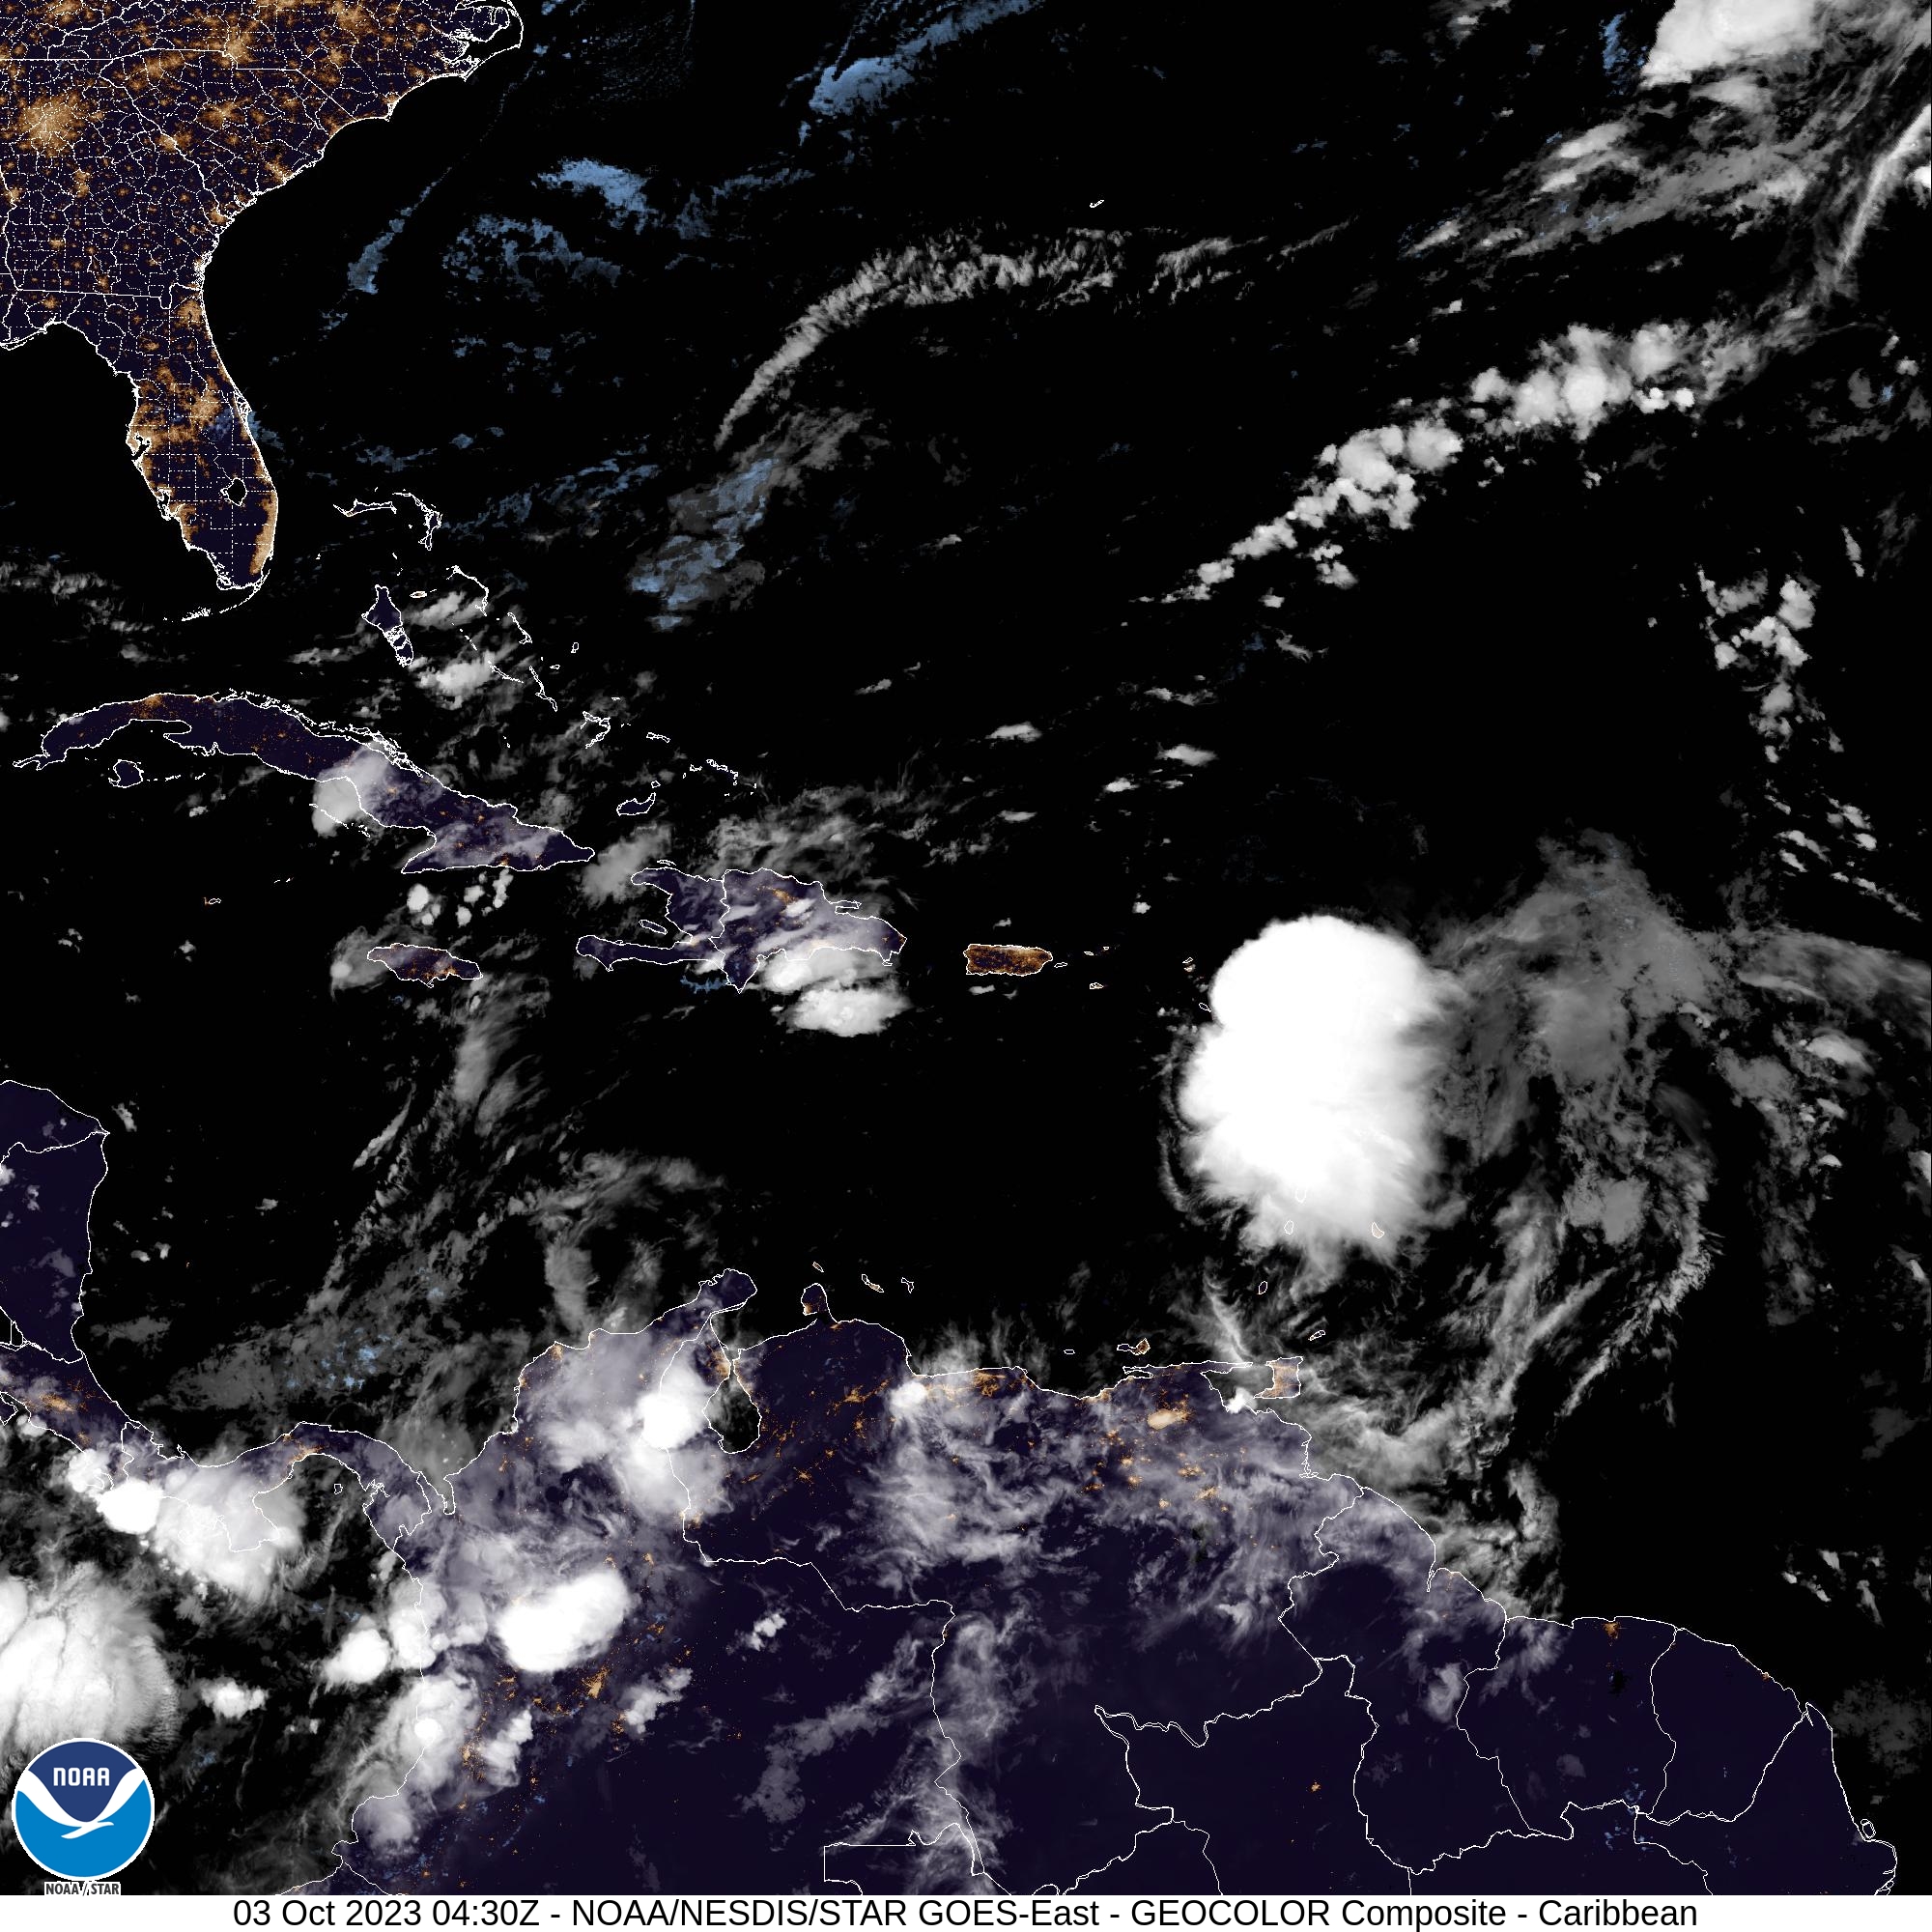 Les Antilles et îles caribéennes sont chahutées par la tempête Philippe, qui pourrait se transformer en ouragan une fois dans l'océan Atlantique. Image satellite/NHC